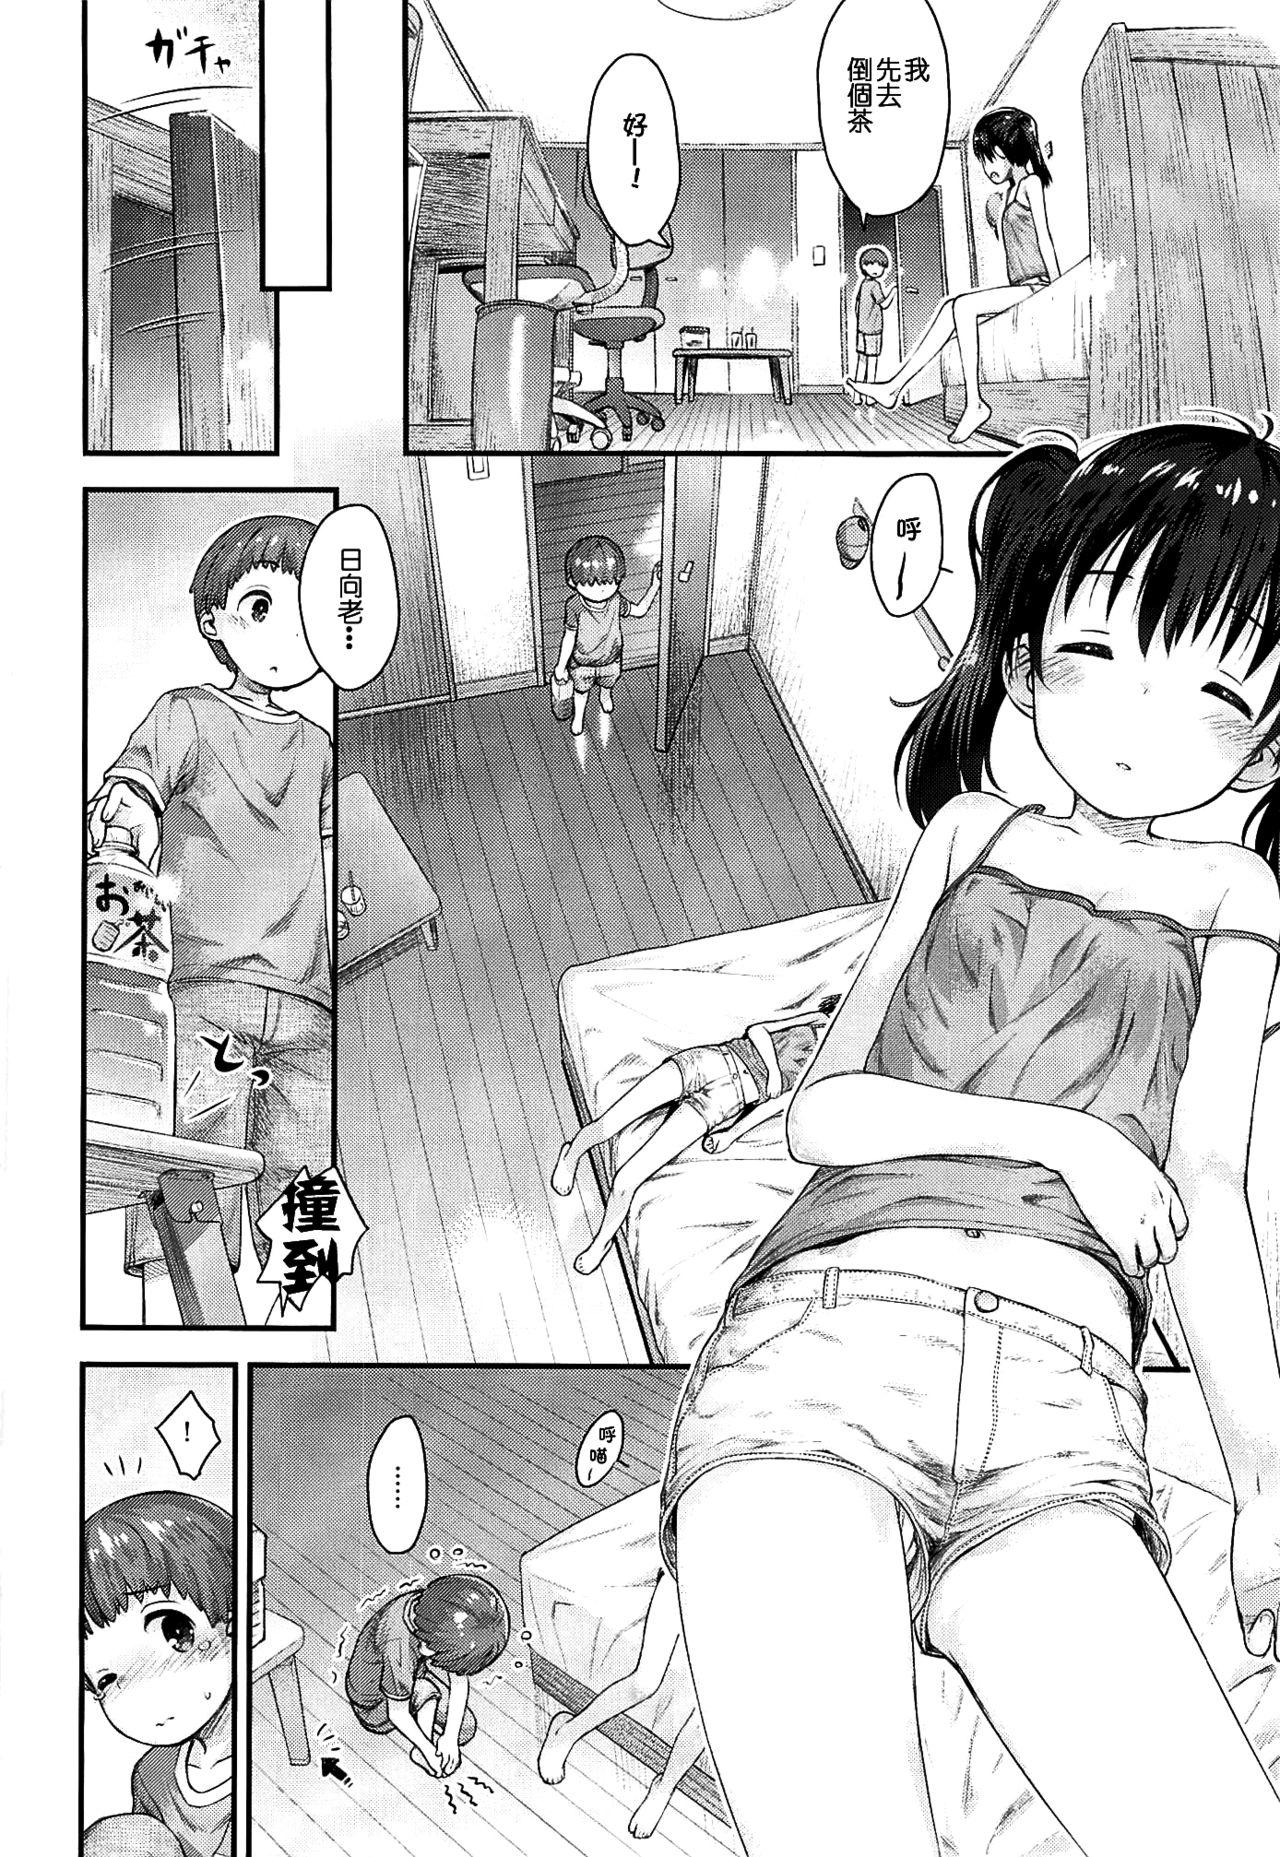 Jerking Off Hinata Sensei ga Oshiete ageru! - Yama no susume Stepsiblings - Page 10